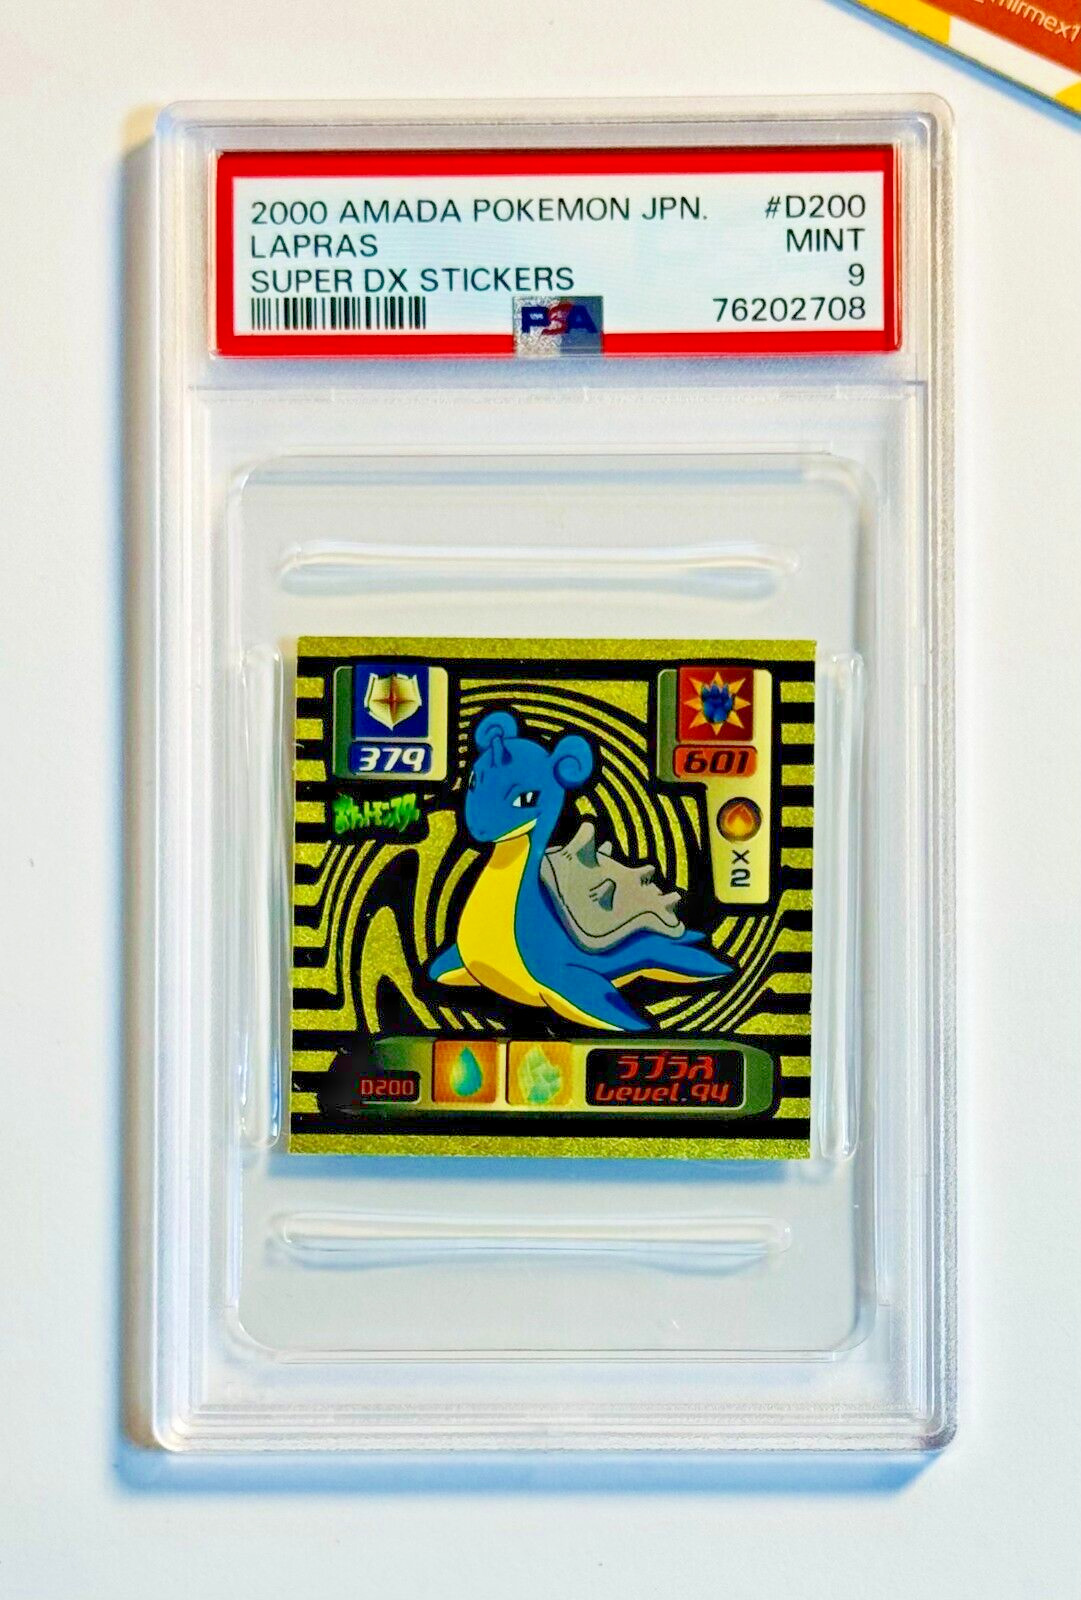 Pokemon PSA 9 Lapras #D200 Amada Super DX Stickers 2000 Japanese